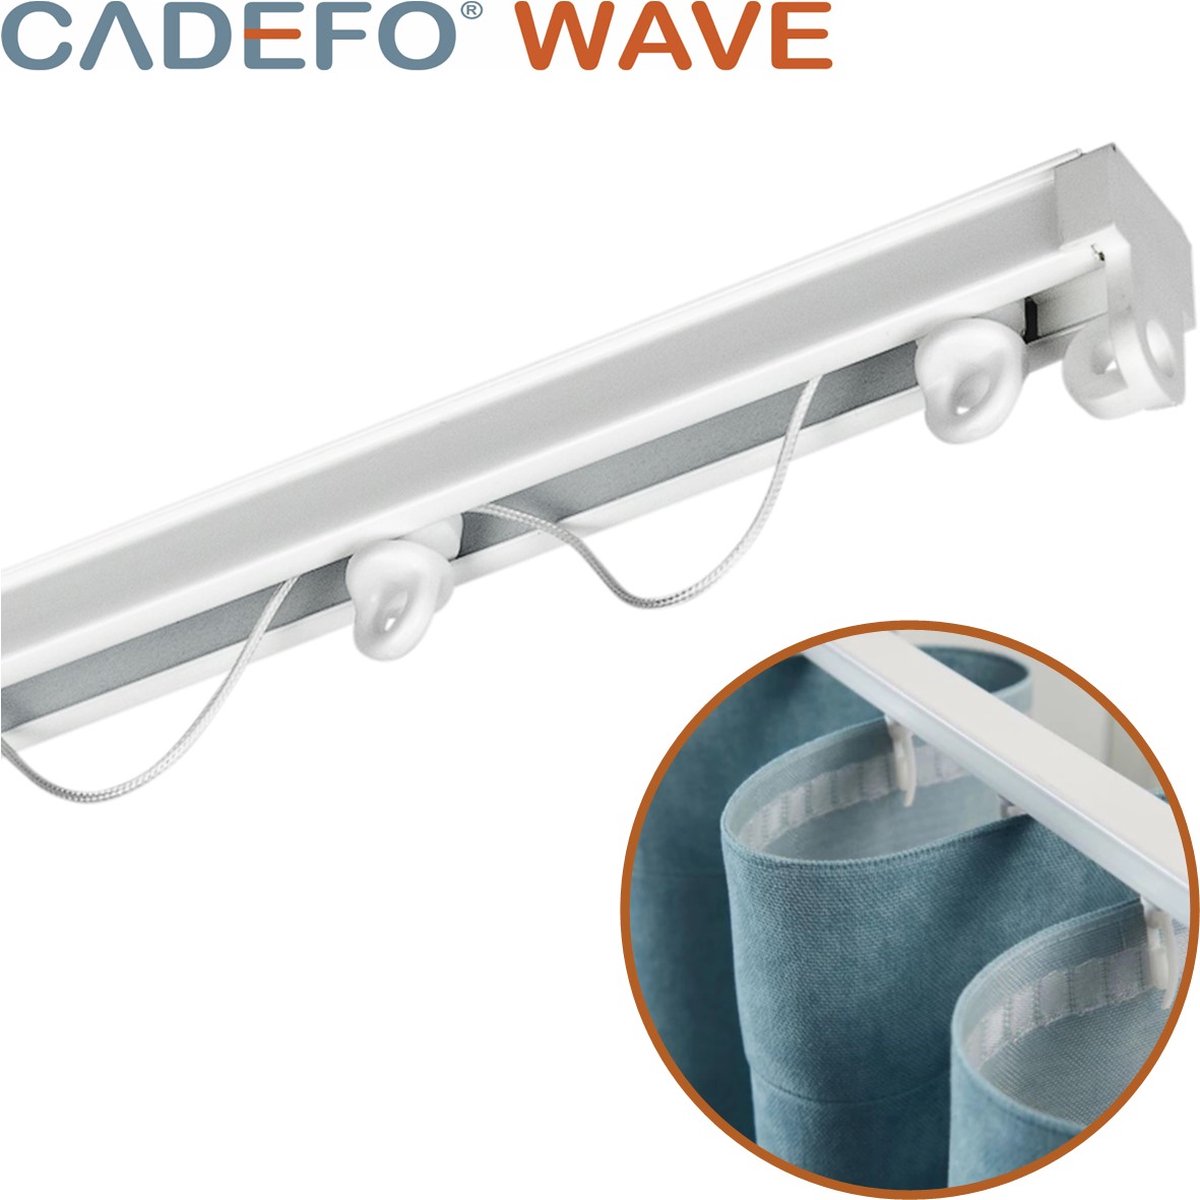 CADEFO WAVE (301 - 350 cm) Gordijnrails - Compleet op maat! - UIT 1 STUK - Leverbaar tot 6 meter - Plafondbevestiging - Lengte 334 cm